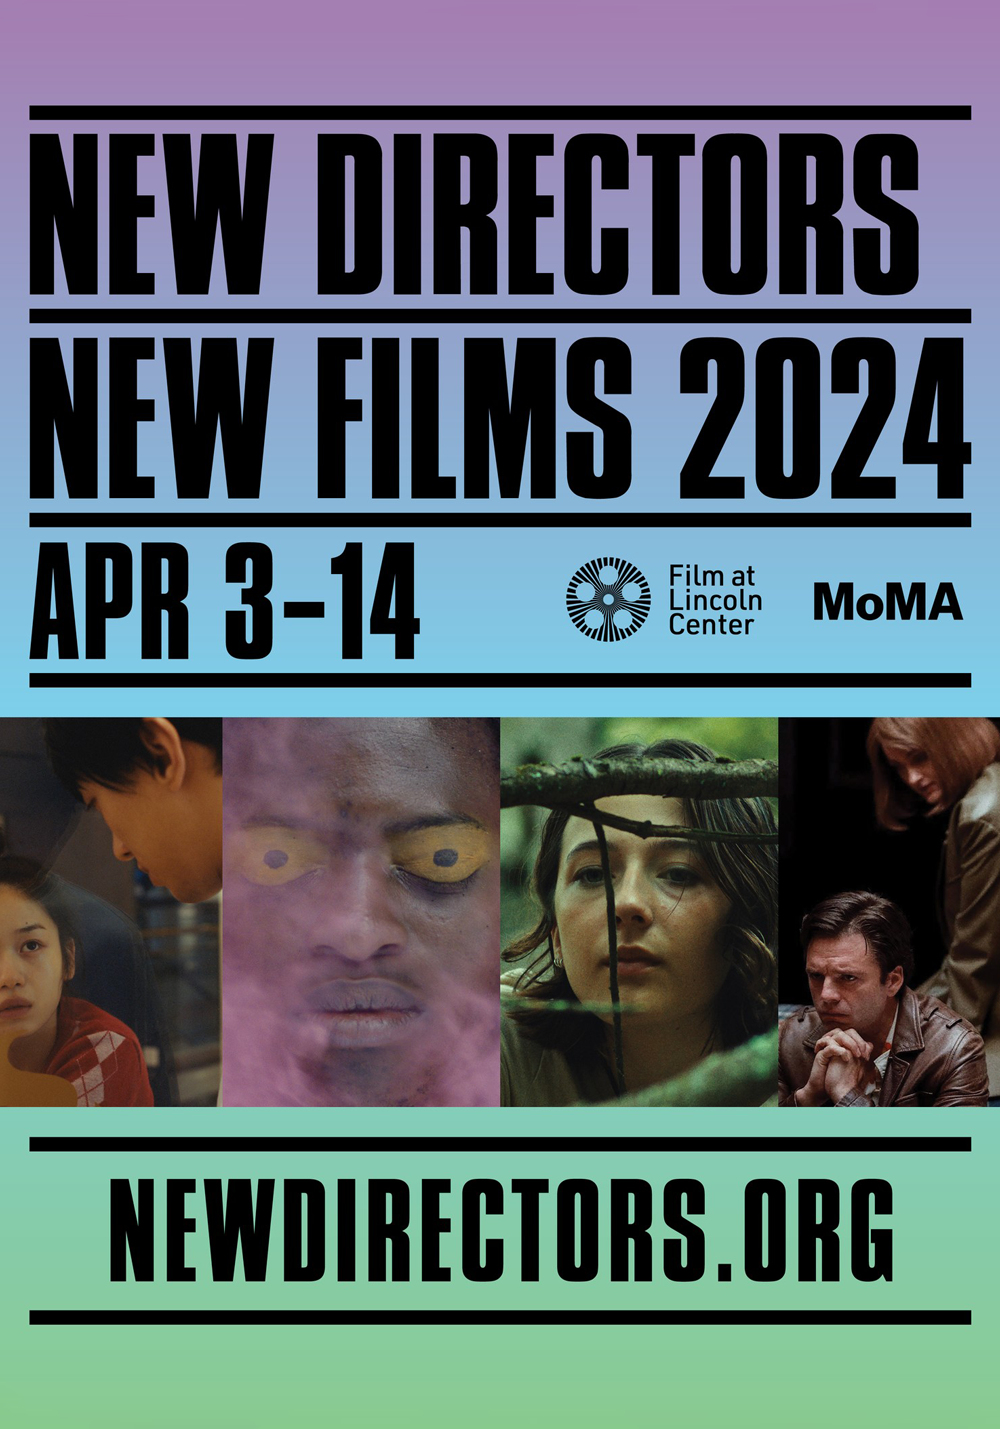 New Directors-New Films 2024.png